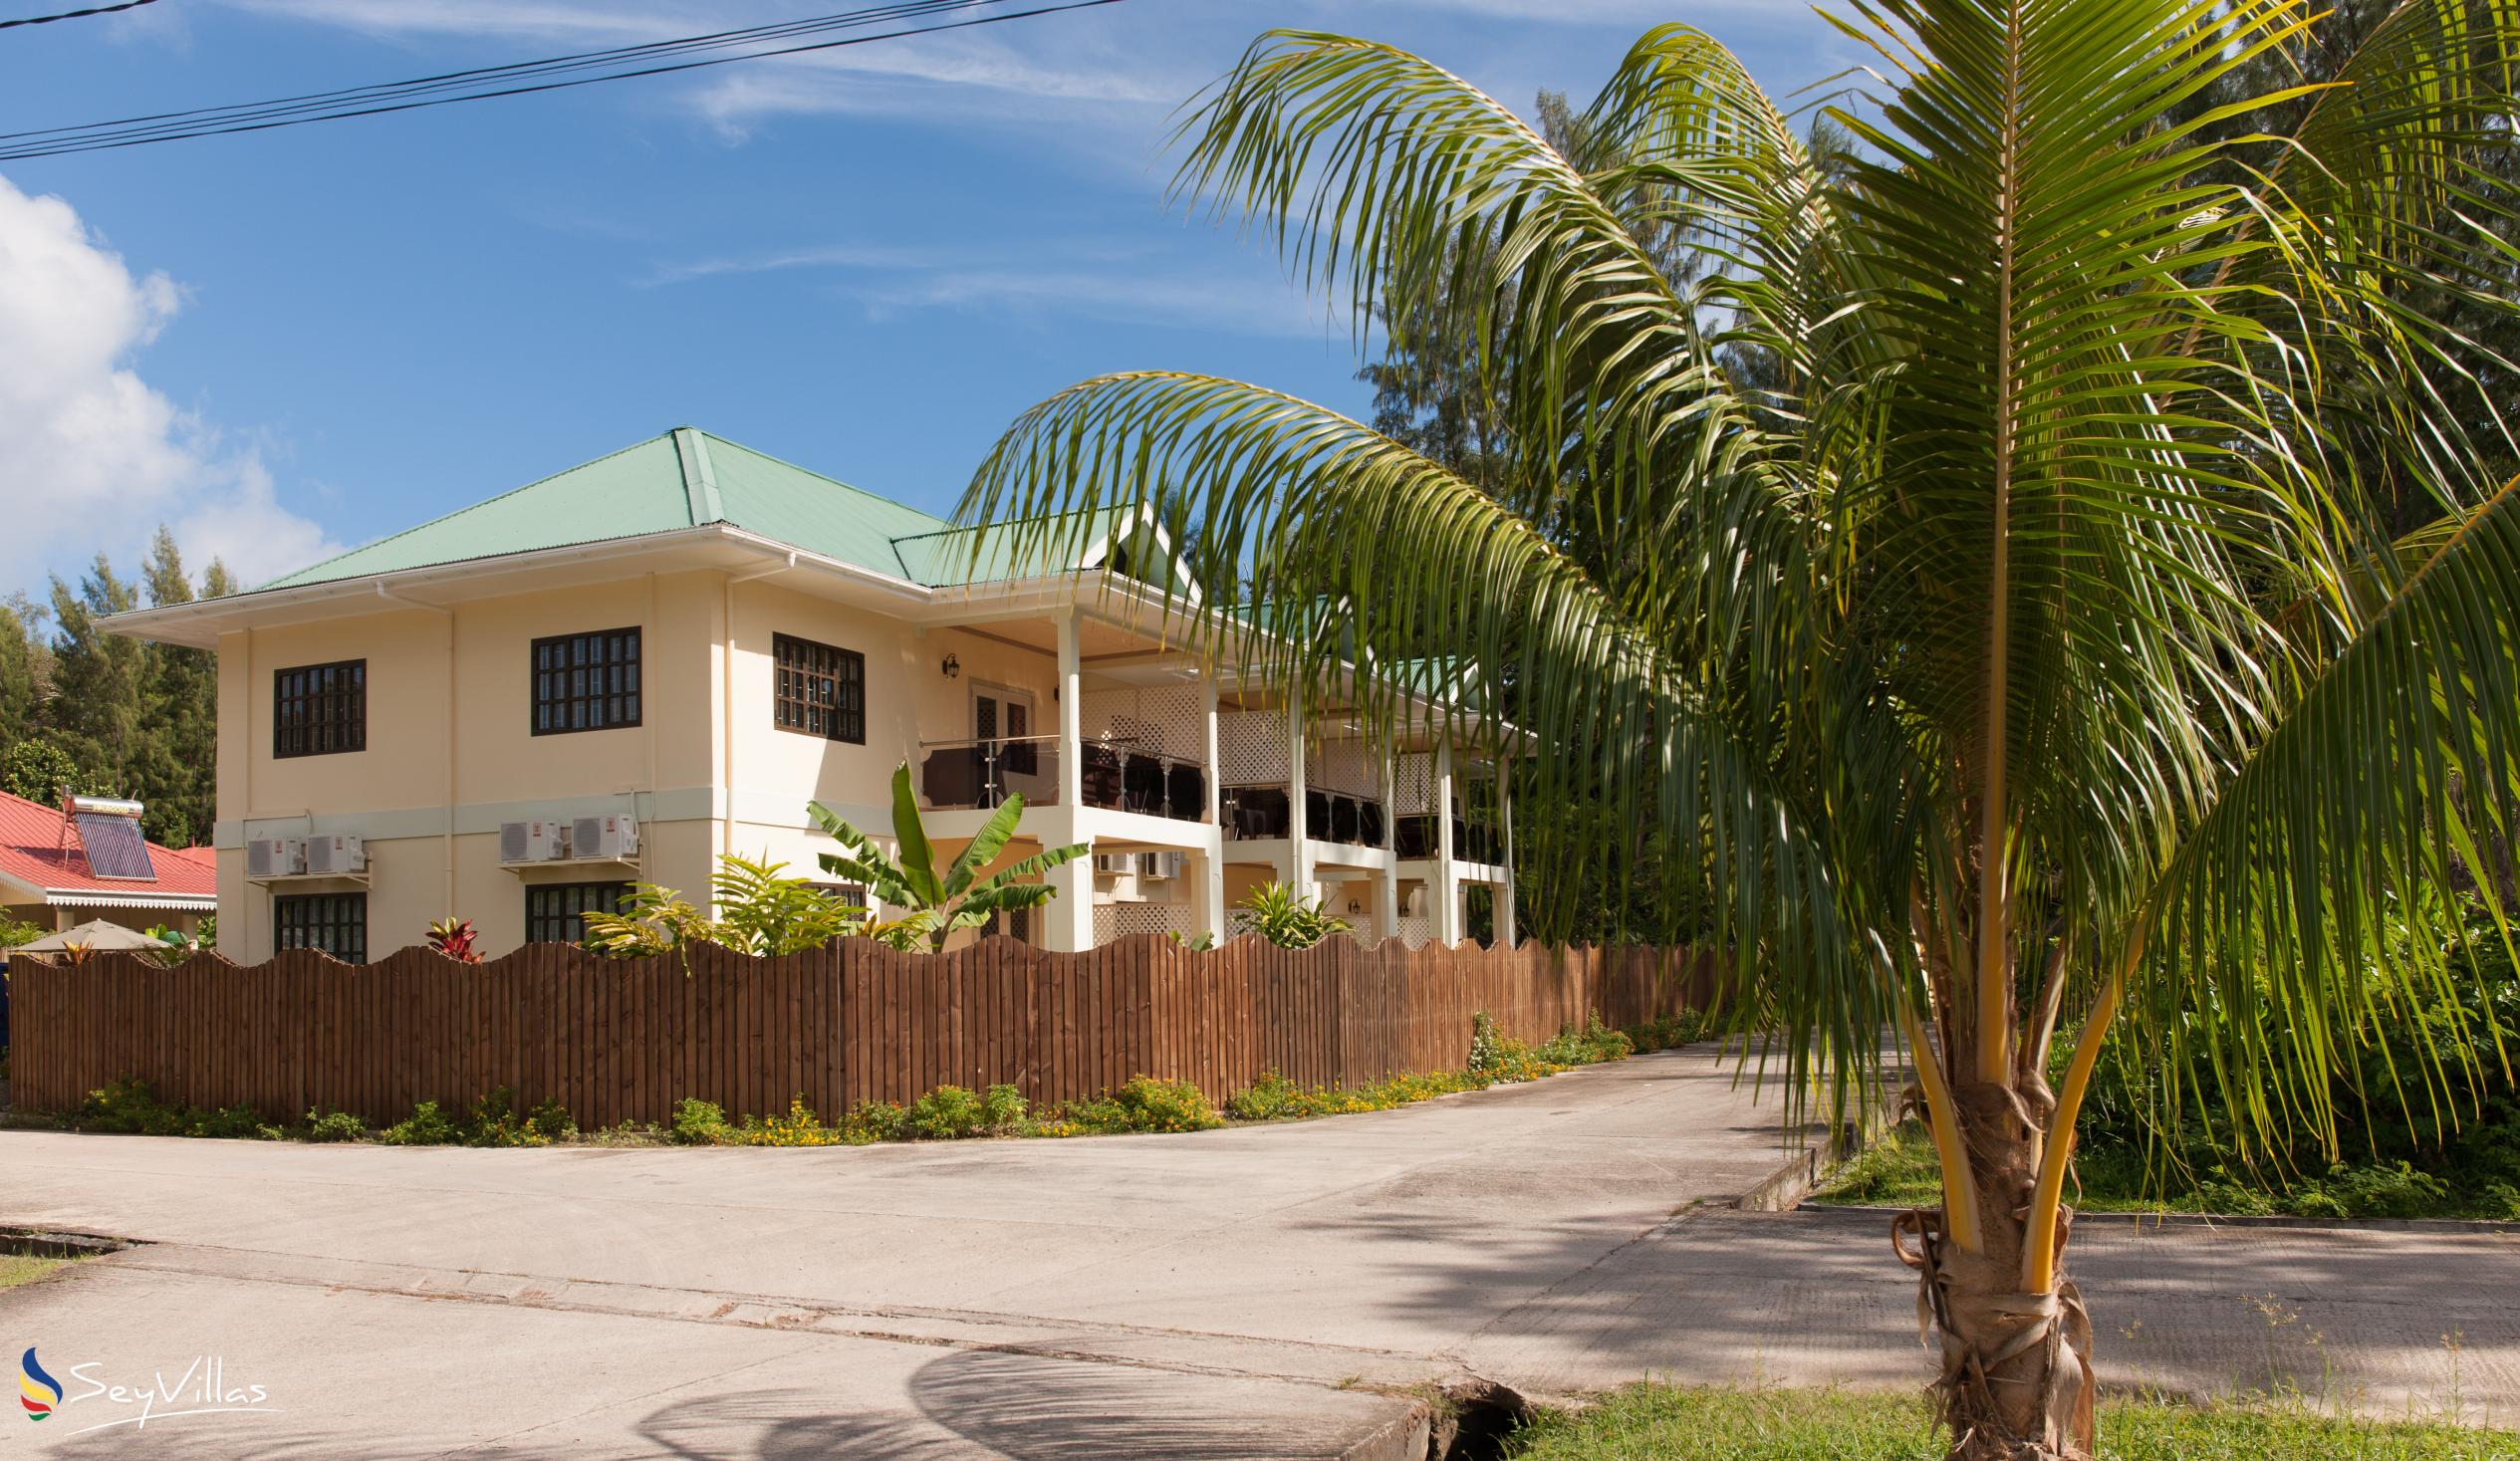 Foto 58: Chez Bea Villa - Lage - Praslin (Seychellen)